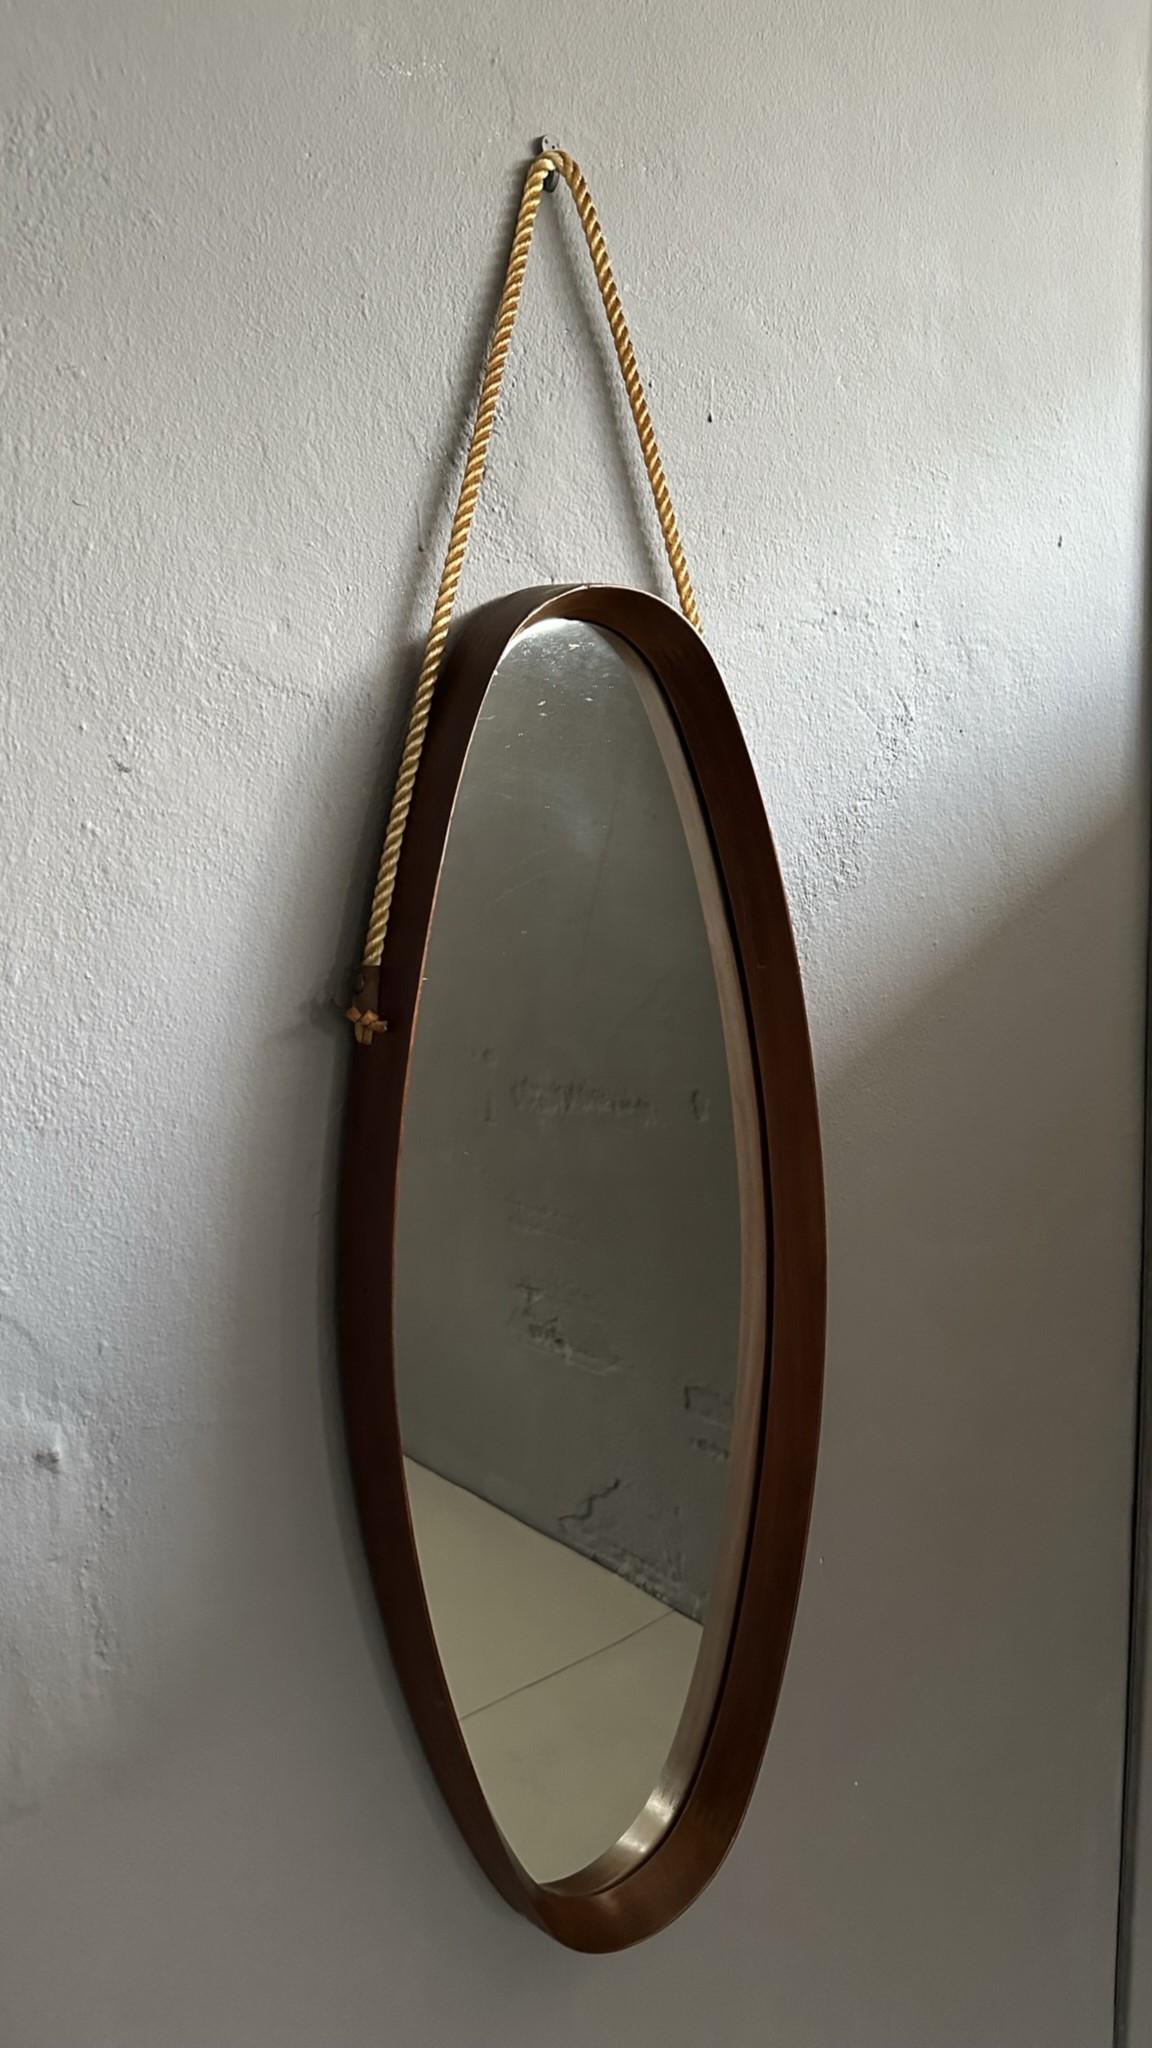 
Ovaler Vintage-Spiegel mit Teakholzrahmen aus den 1960er Jahren, italienische Herstellung.
Der Spiegel ist mit einem Seil zum Aufhängen an der Wand versehen.